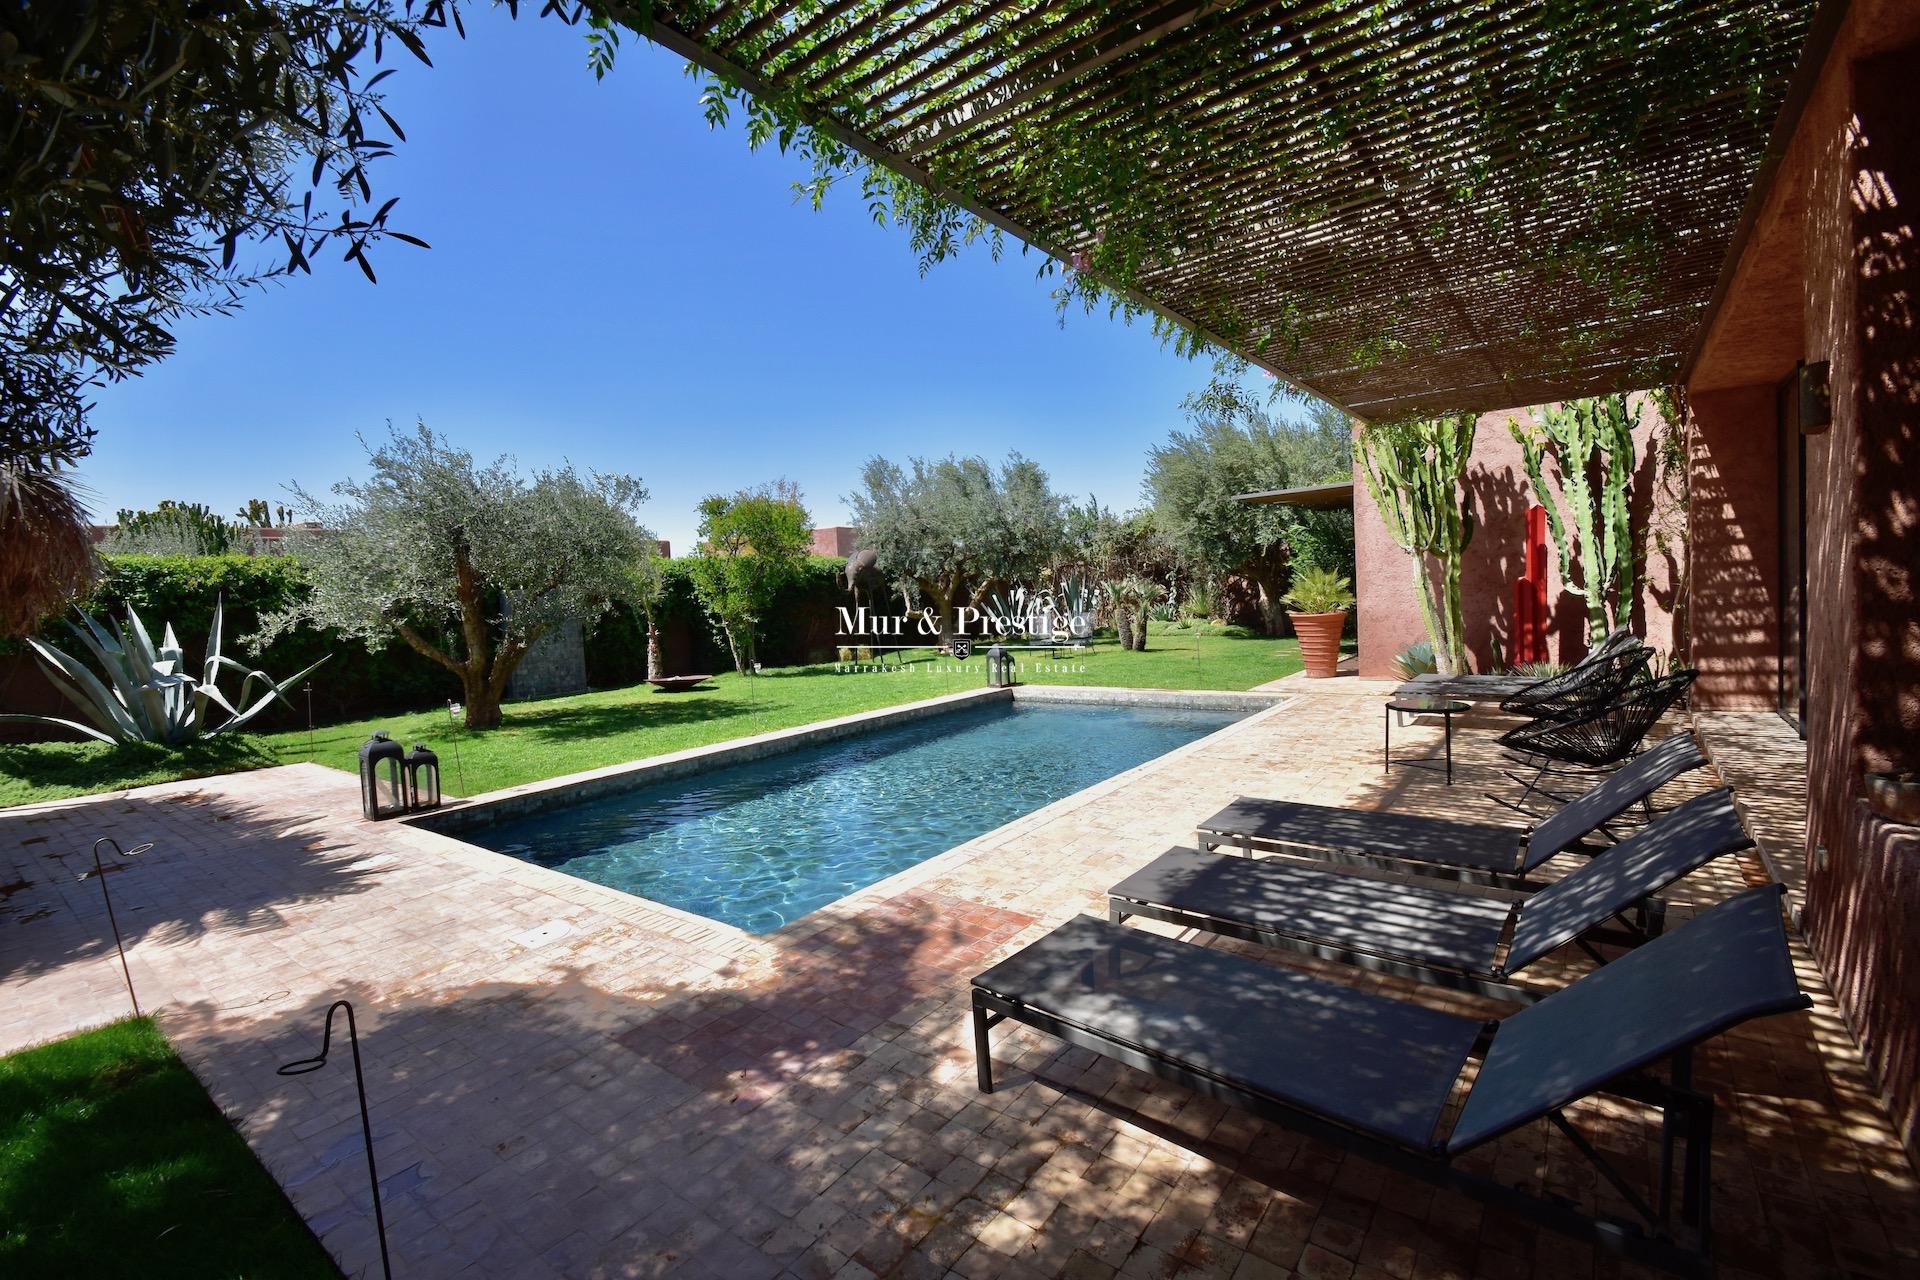 Fairmont Golf Royal Palm à Marrakech - Maison à vendre